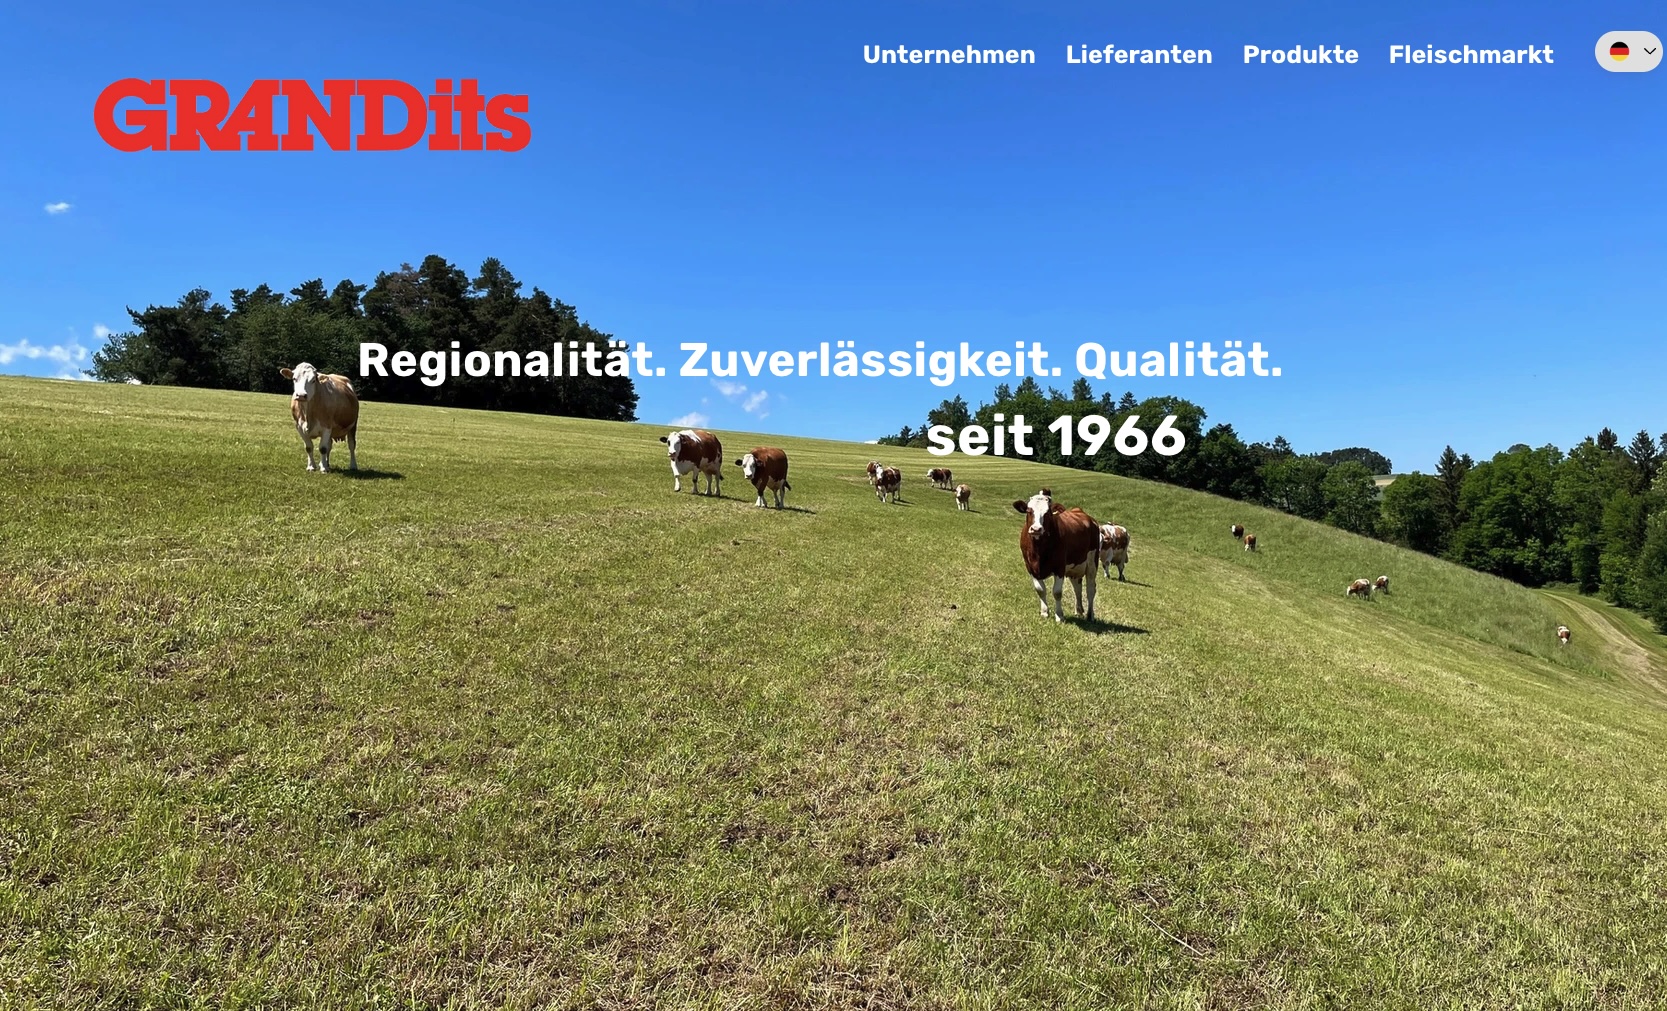 Grandits arbeitet mit etwa 10.000 Landwirten zusammen und hat Standorte in Kirchschlag, Ruprechtshofen und Karlstetten (Bild: Screen)